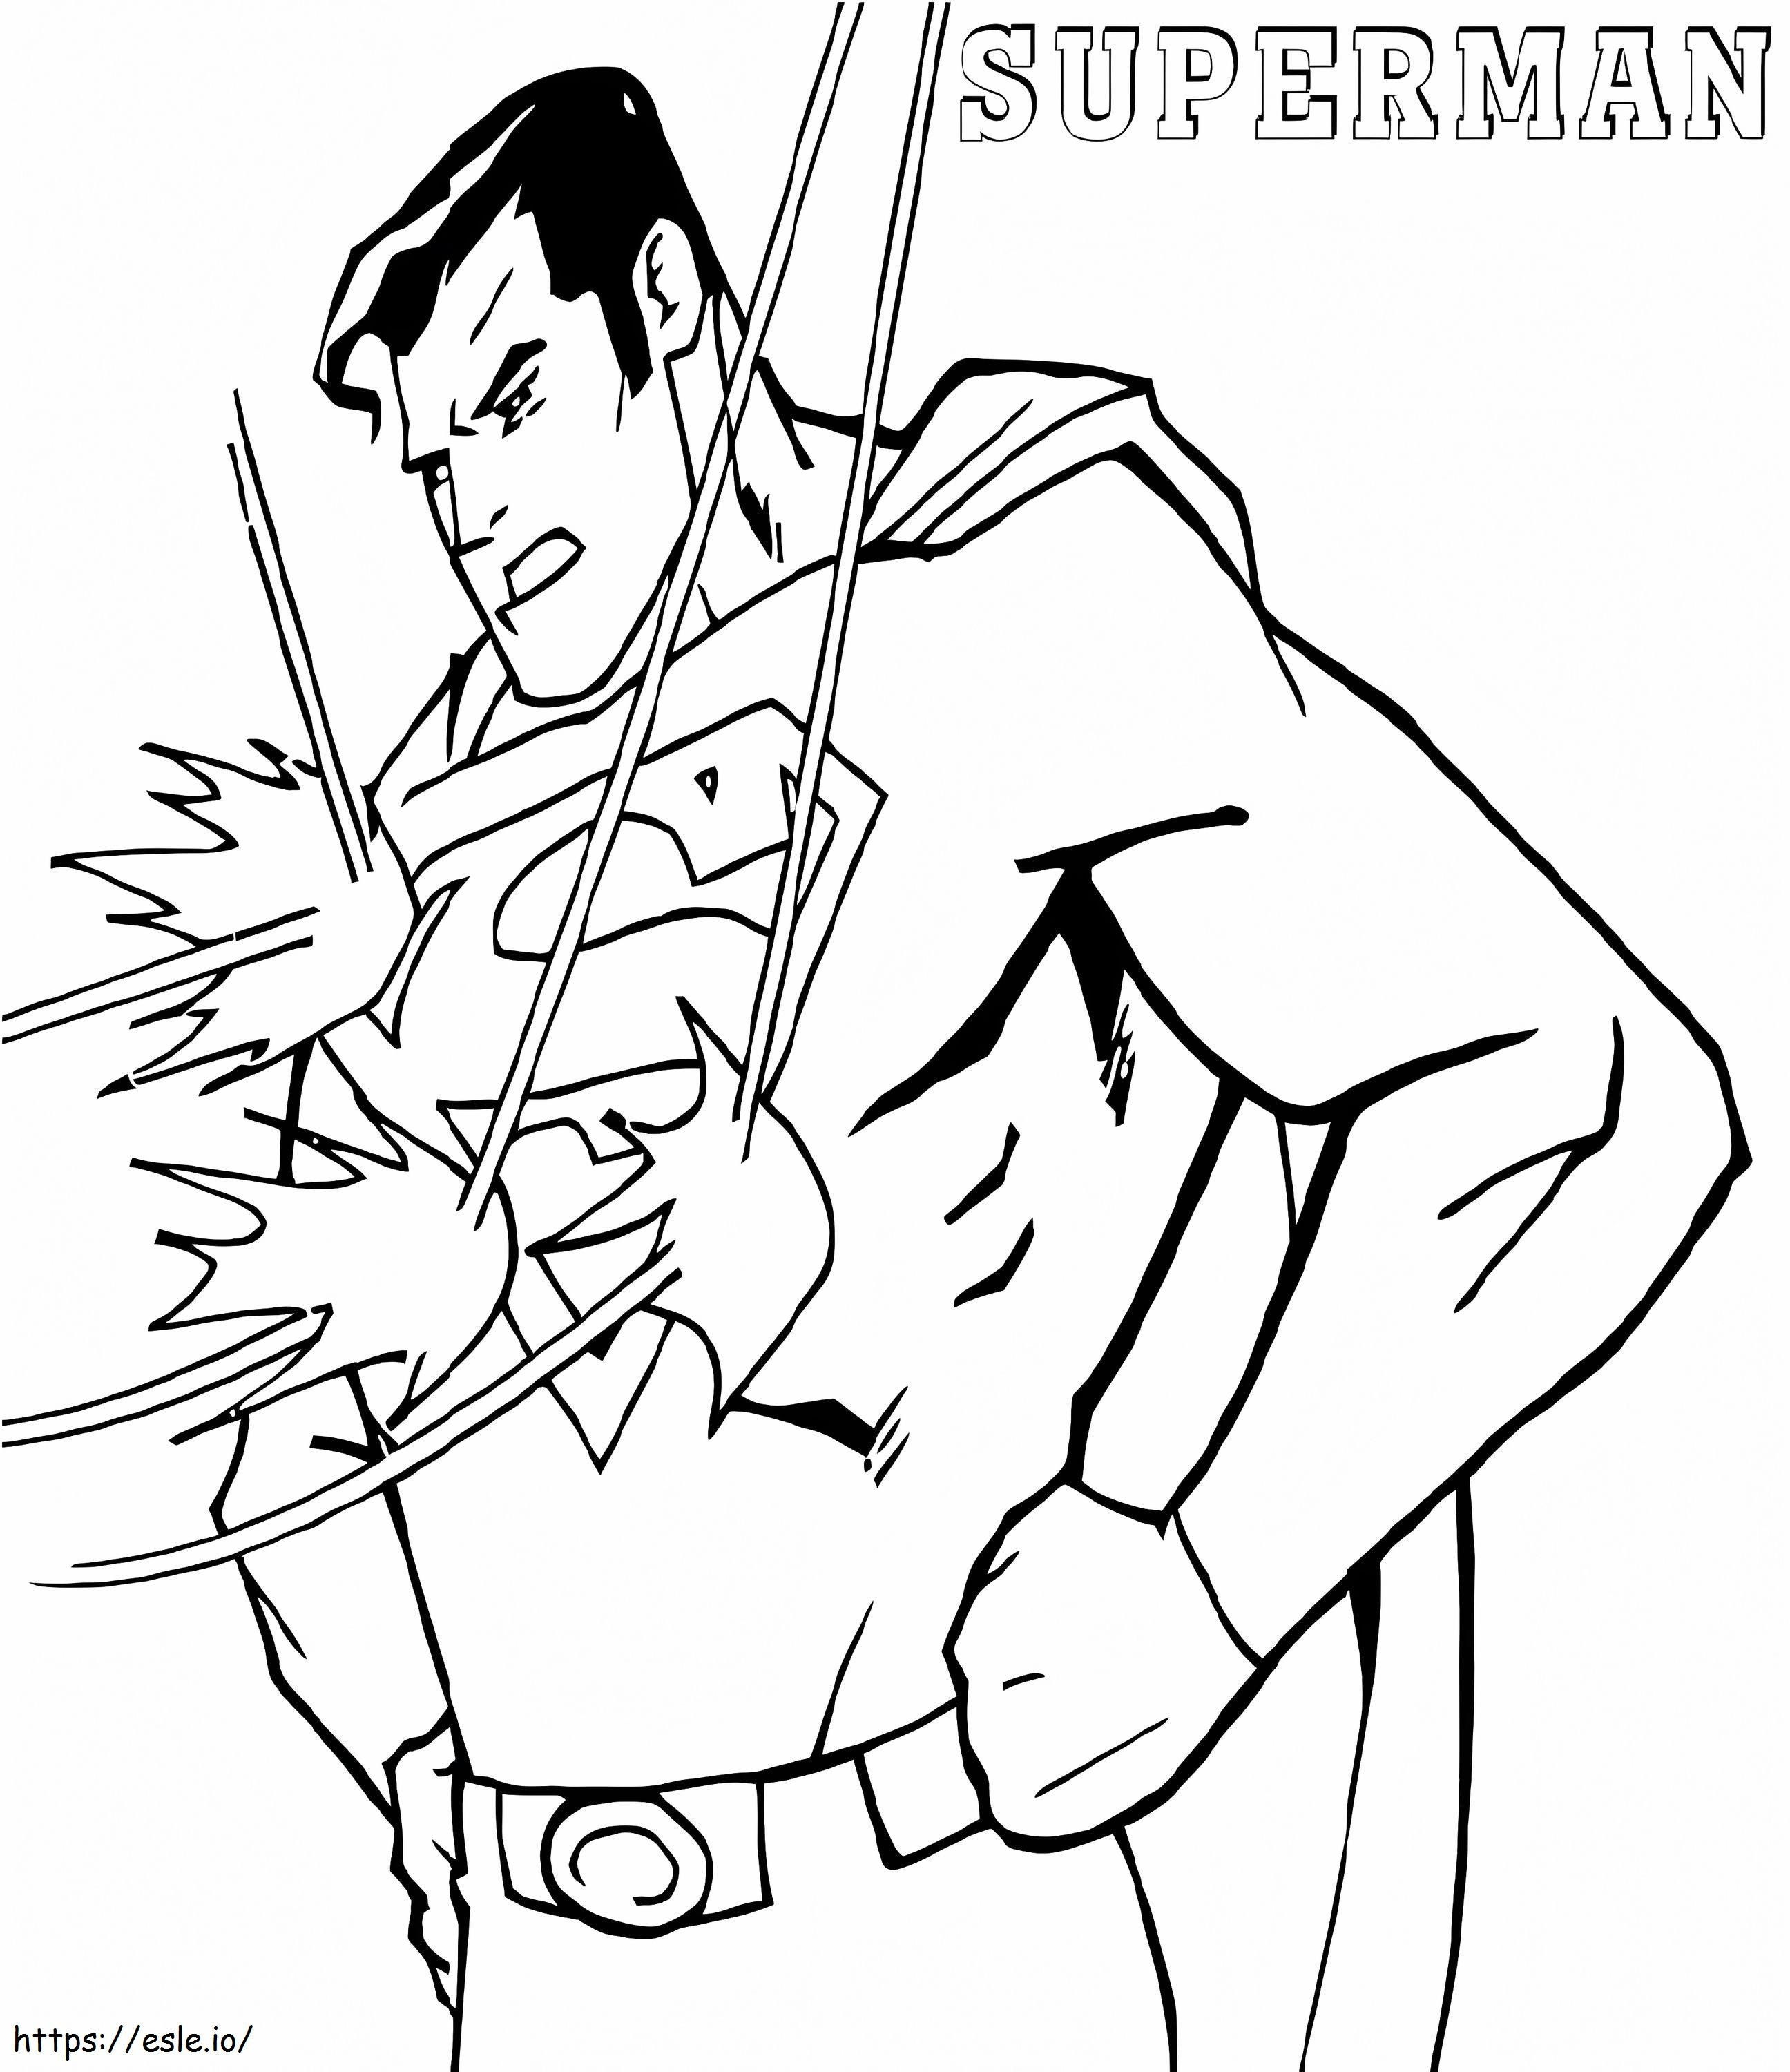 Superman a prueba de balas para colorear